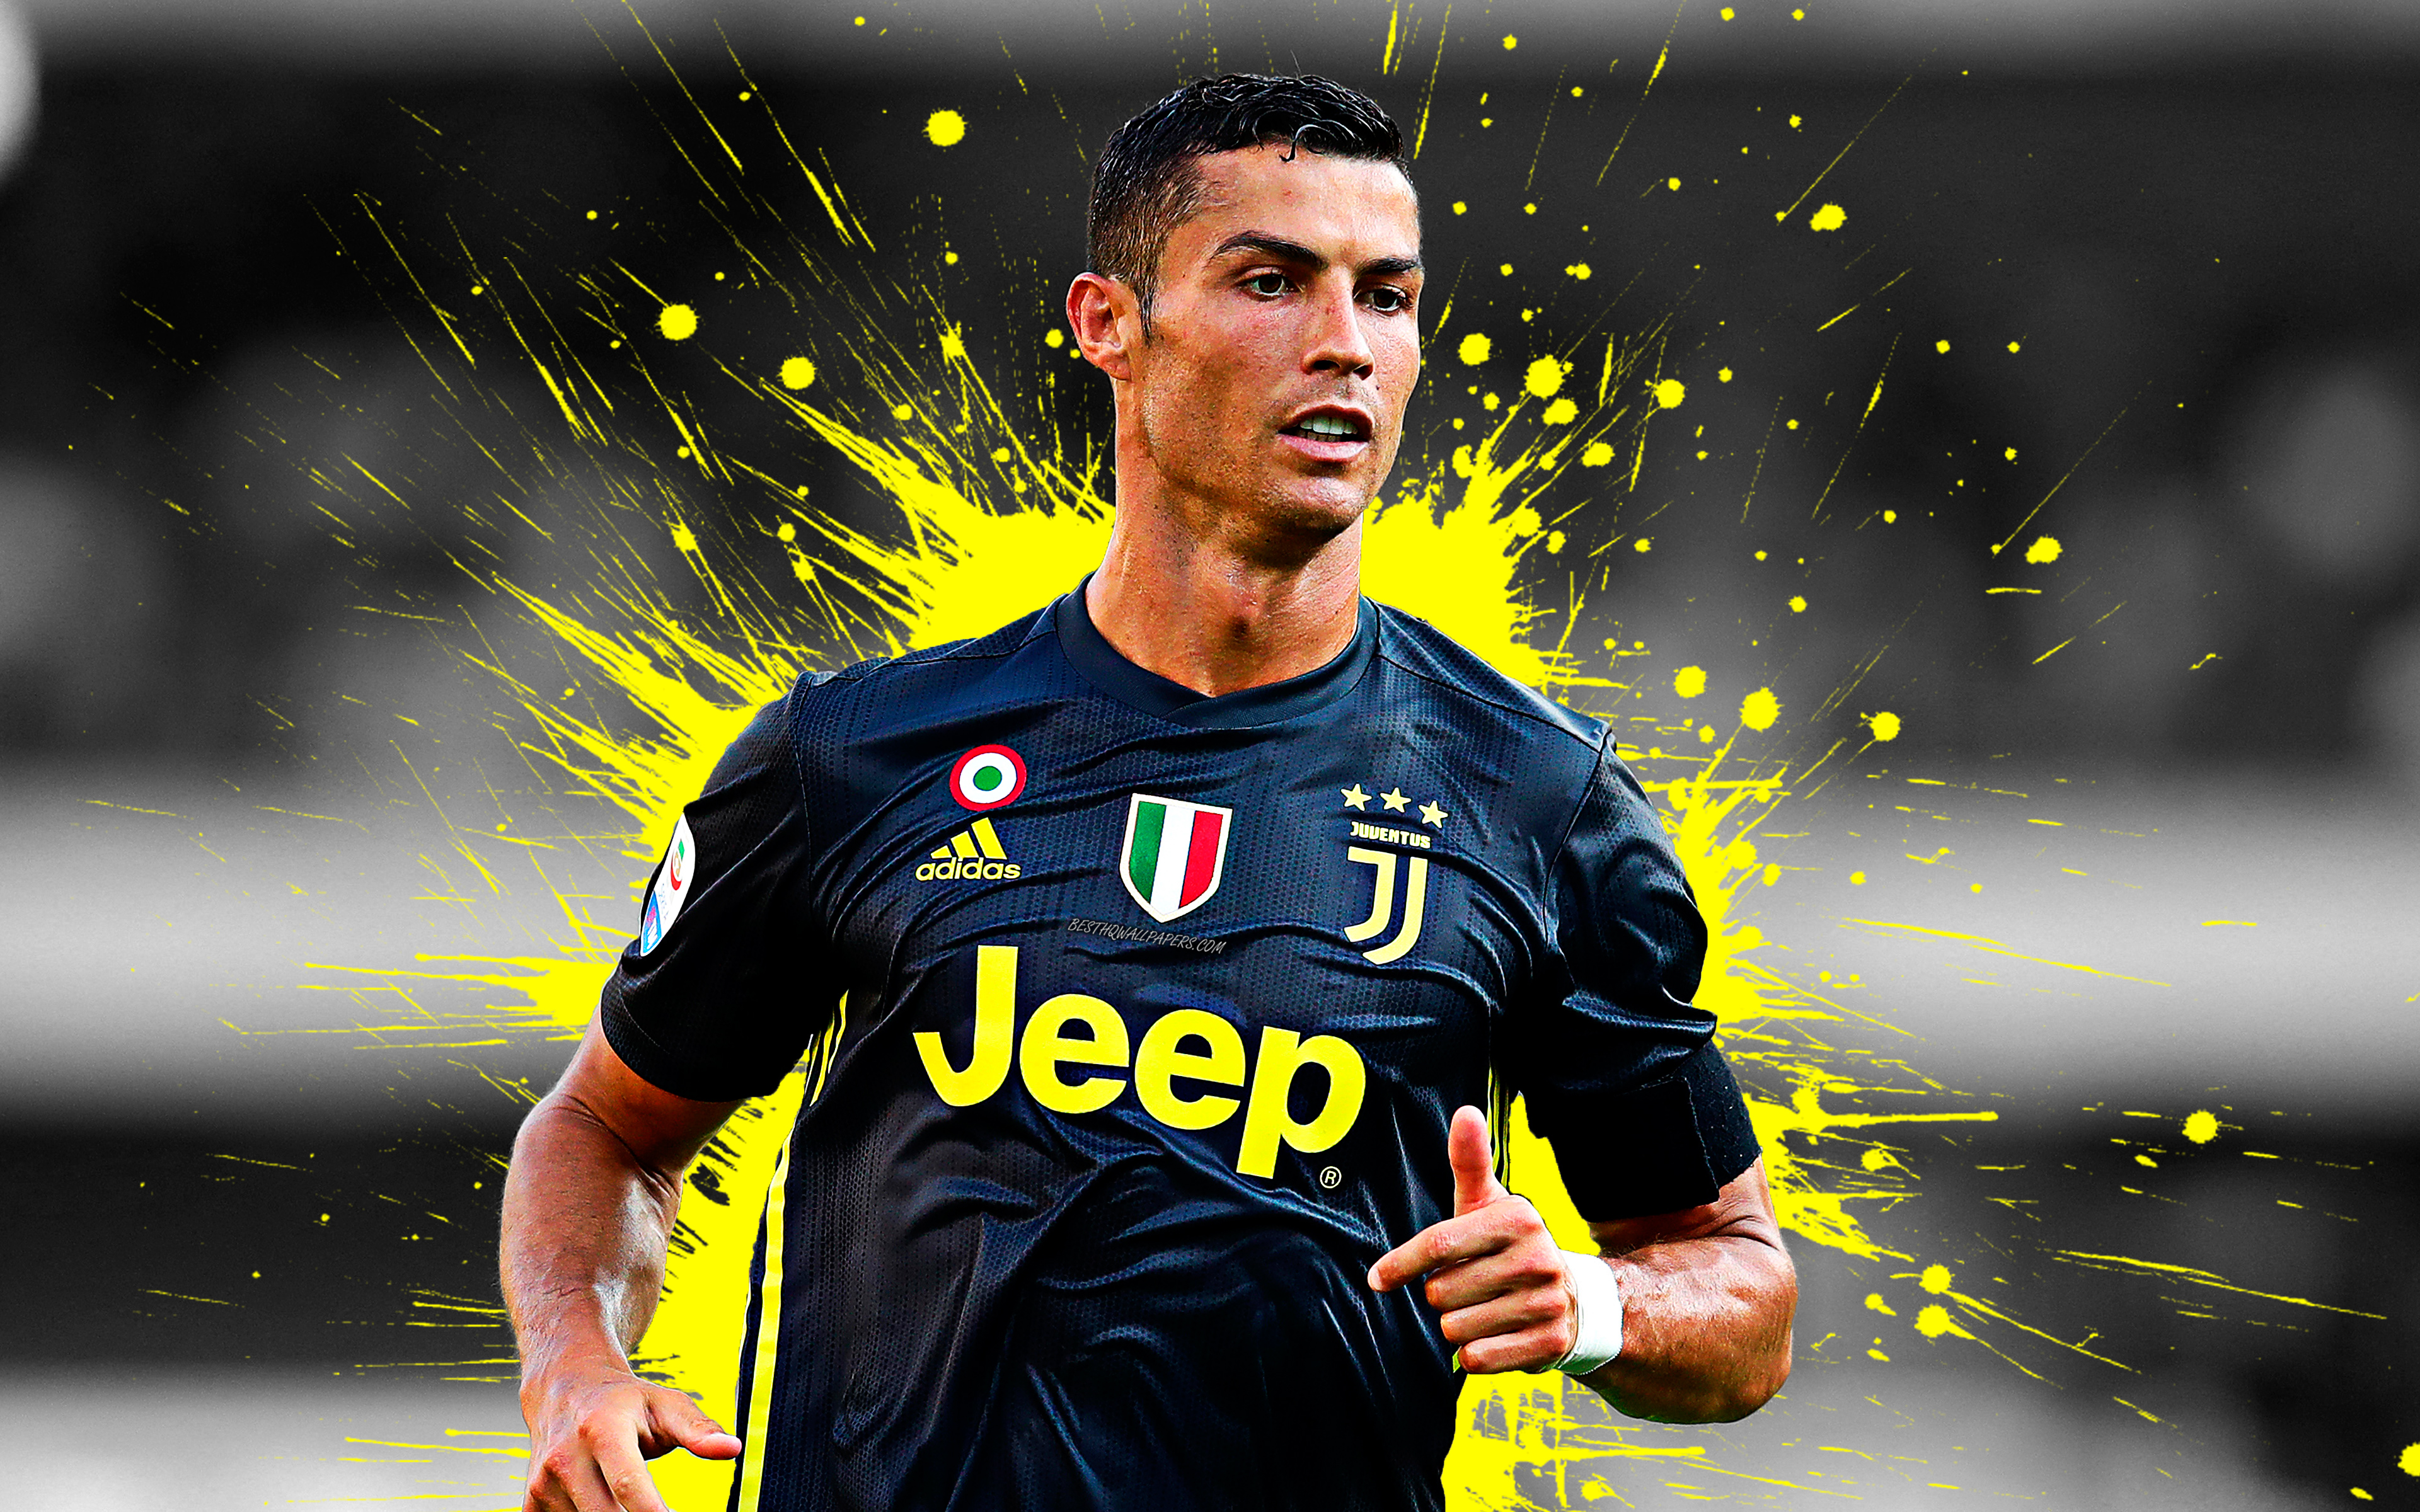 Nuova collezione Sfondi Di Ronaldo - Immagini di sfondo HD